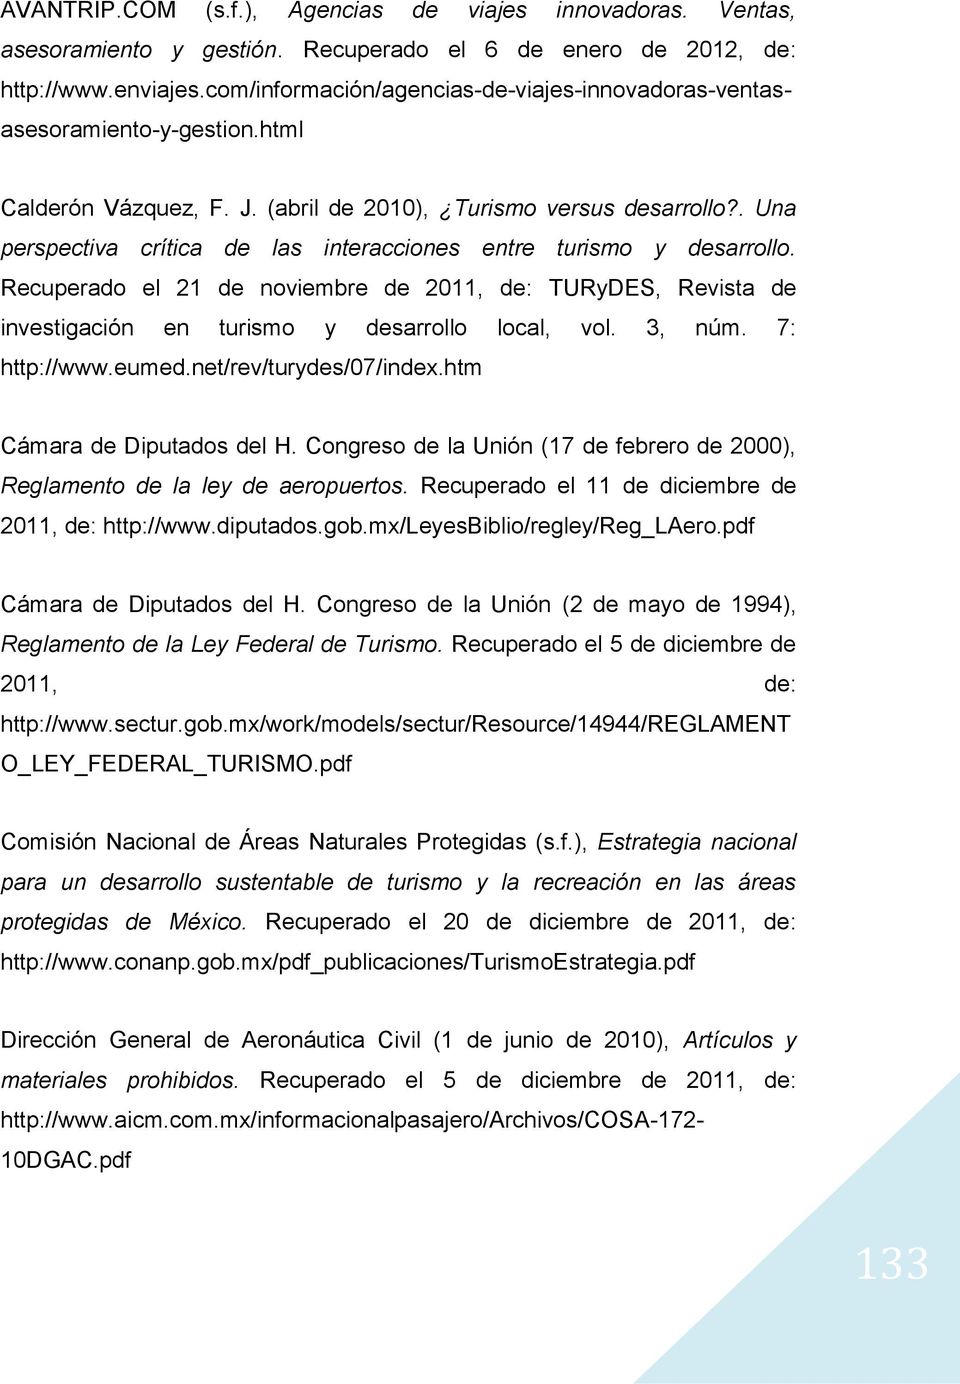 Congreso de la Unión (17 de febrero de 2000), Reglamento de la ley de aeropuertos. Recuperado el 11 de diciembre de 2011, de: http://www.diputados.gob.mx/leyesbiblio/regley/reg_laero.